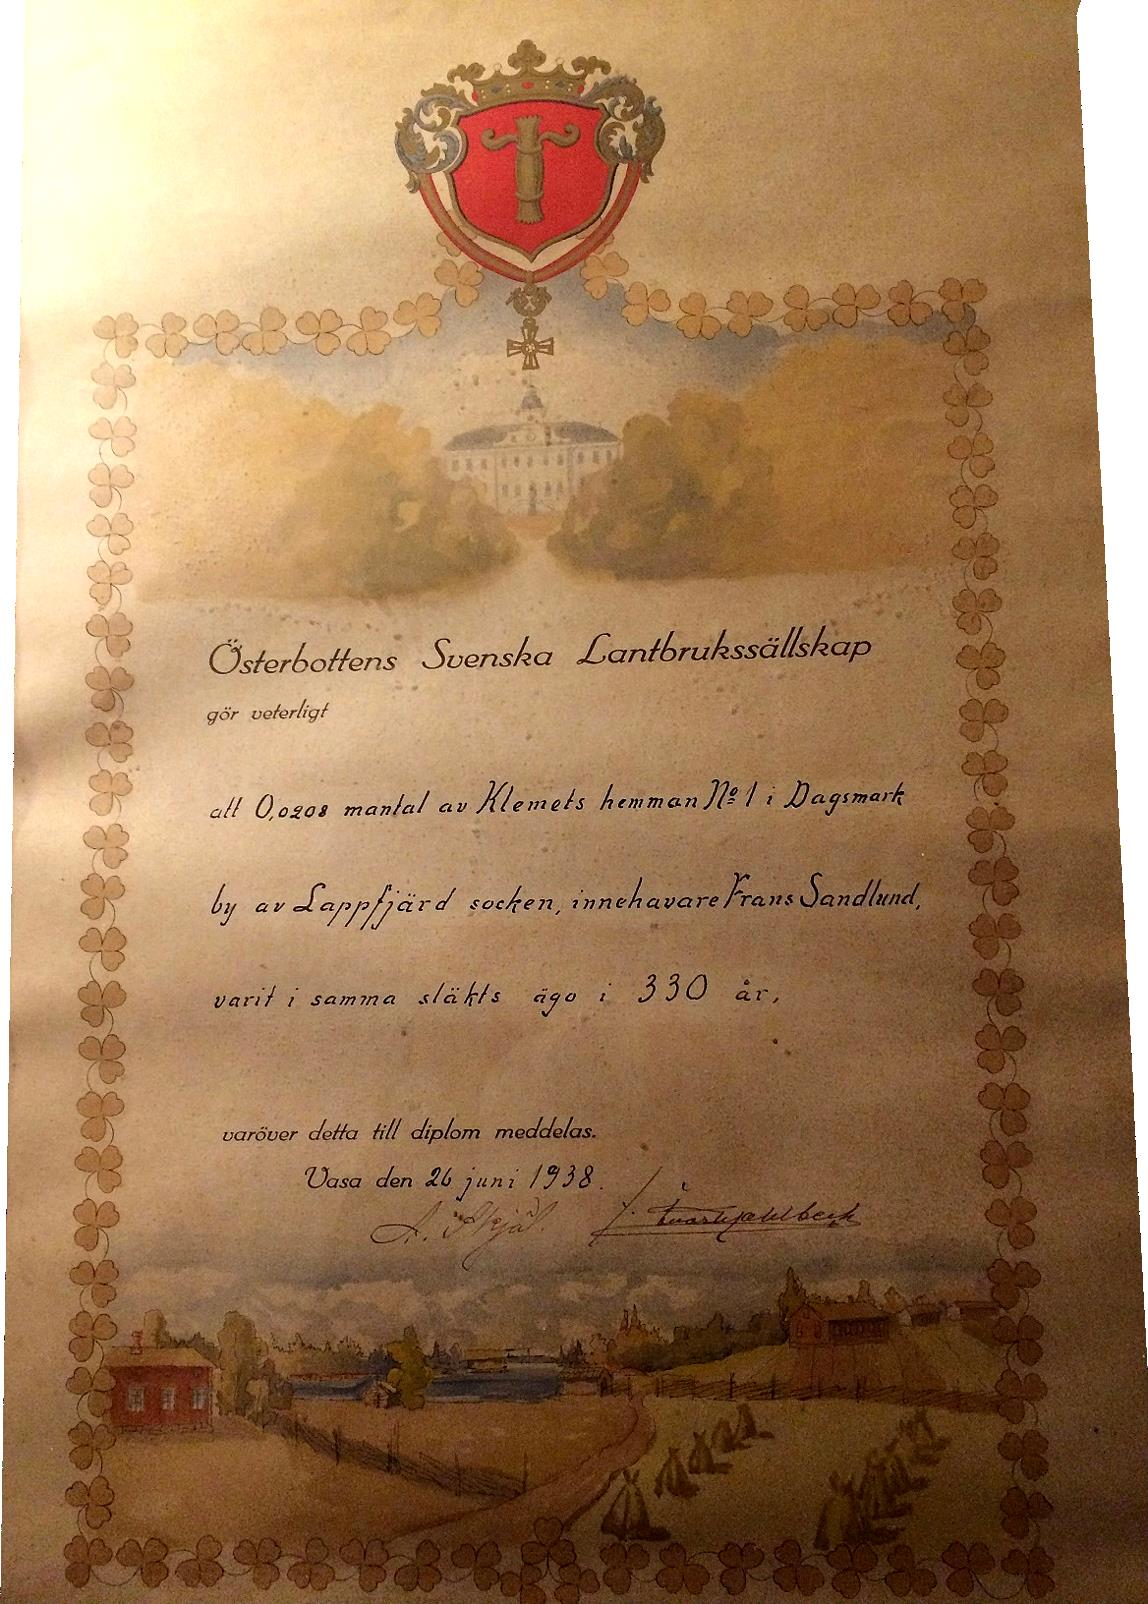 På lantbruksutställningen i Lappfjärd år 1938 fick Frans Sandlund detta fina diplom av Österbottens Svenska Lantbrukssällskap. Diplomet visar att Frans ägde en del av Klemets hemman som funnits i 330 år, alltså sedan 1608.